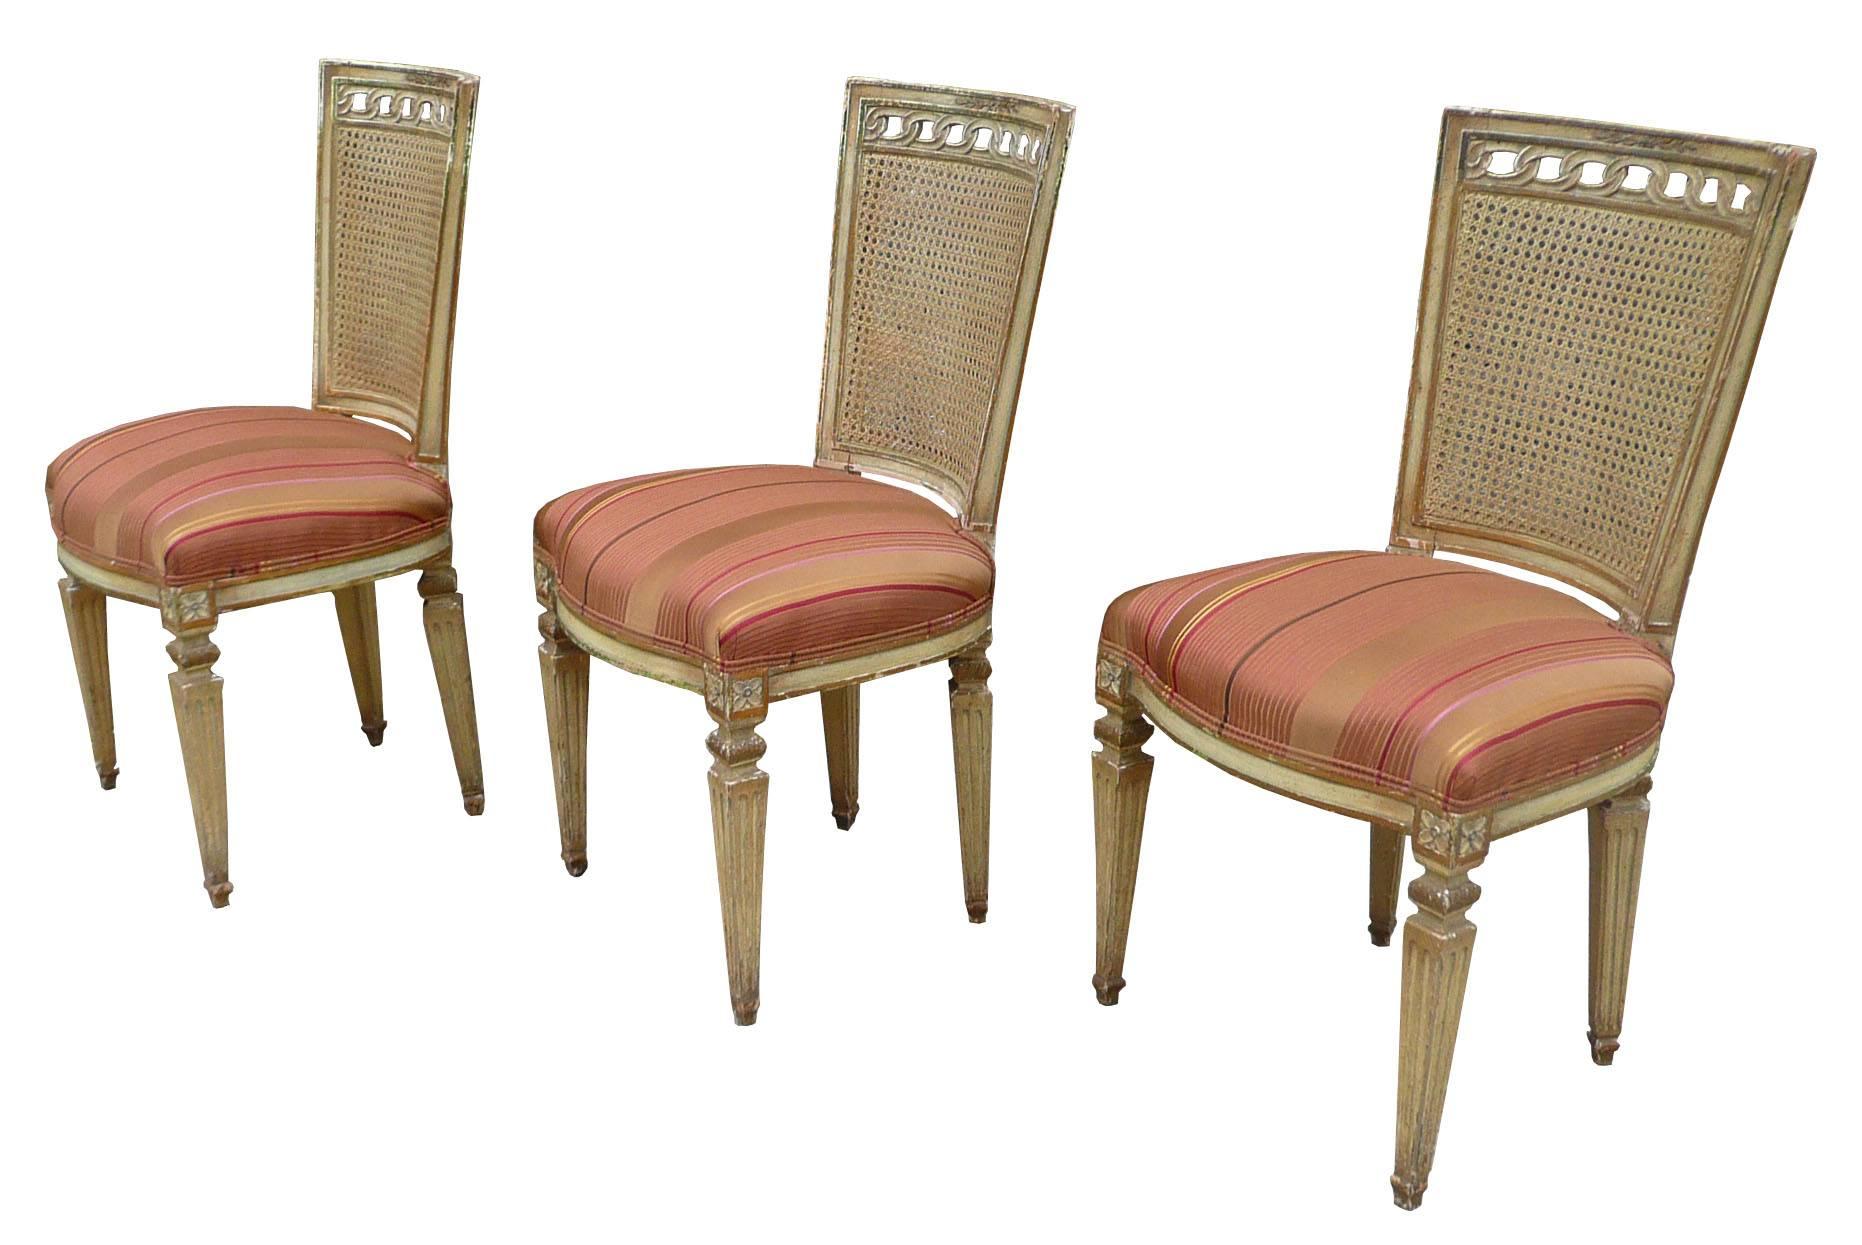 Ensemble de trois chaises d'appoint de style Louis XVI, avec dossier en cannage, châssis en acajou sculpté et peint et sièges rembourrés, vers les années 1950. Les cadres sont en état d'origine et les sièges sont nouvellement recouverts d'une soie